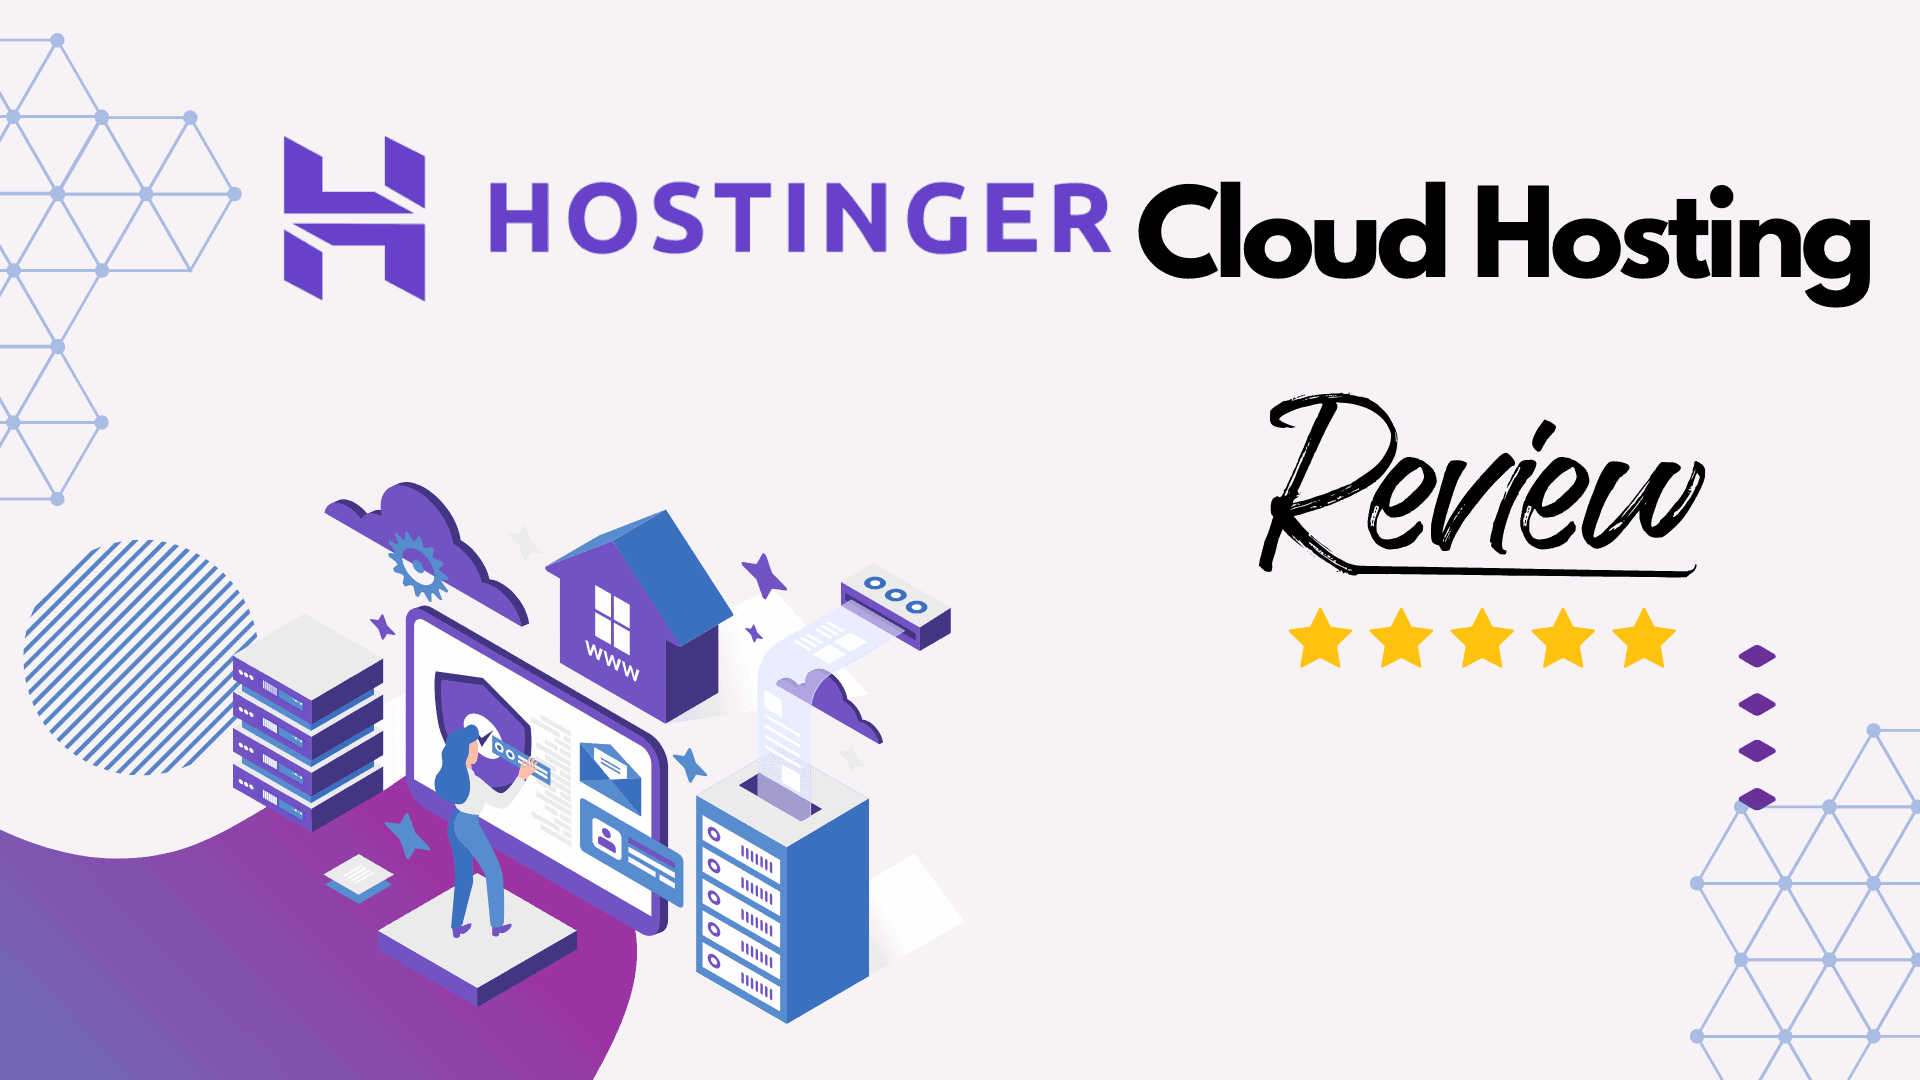 Hostinger cloud hosting